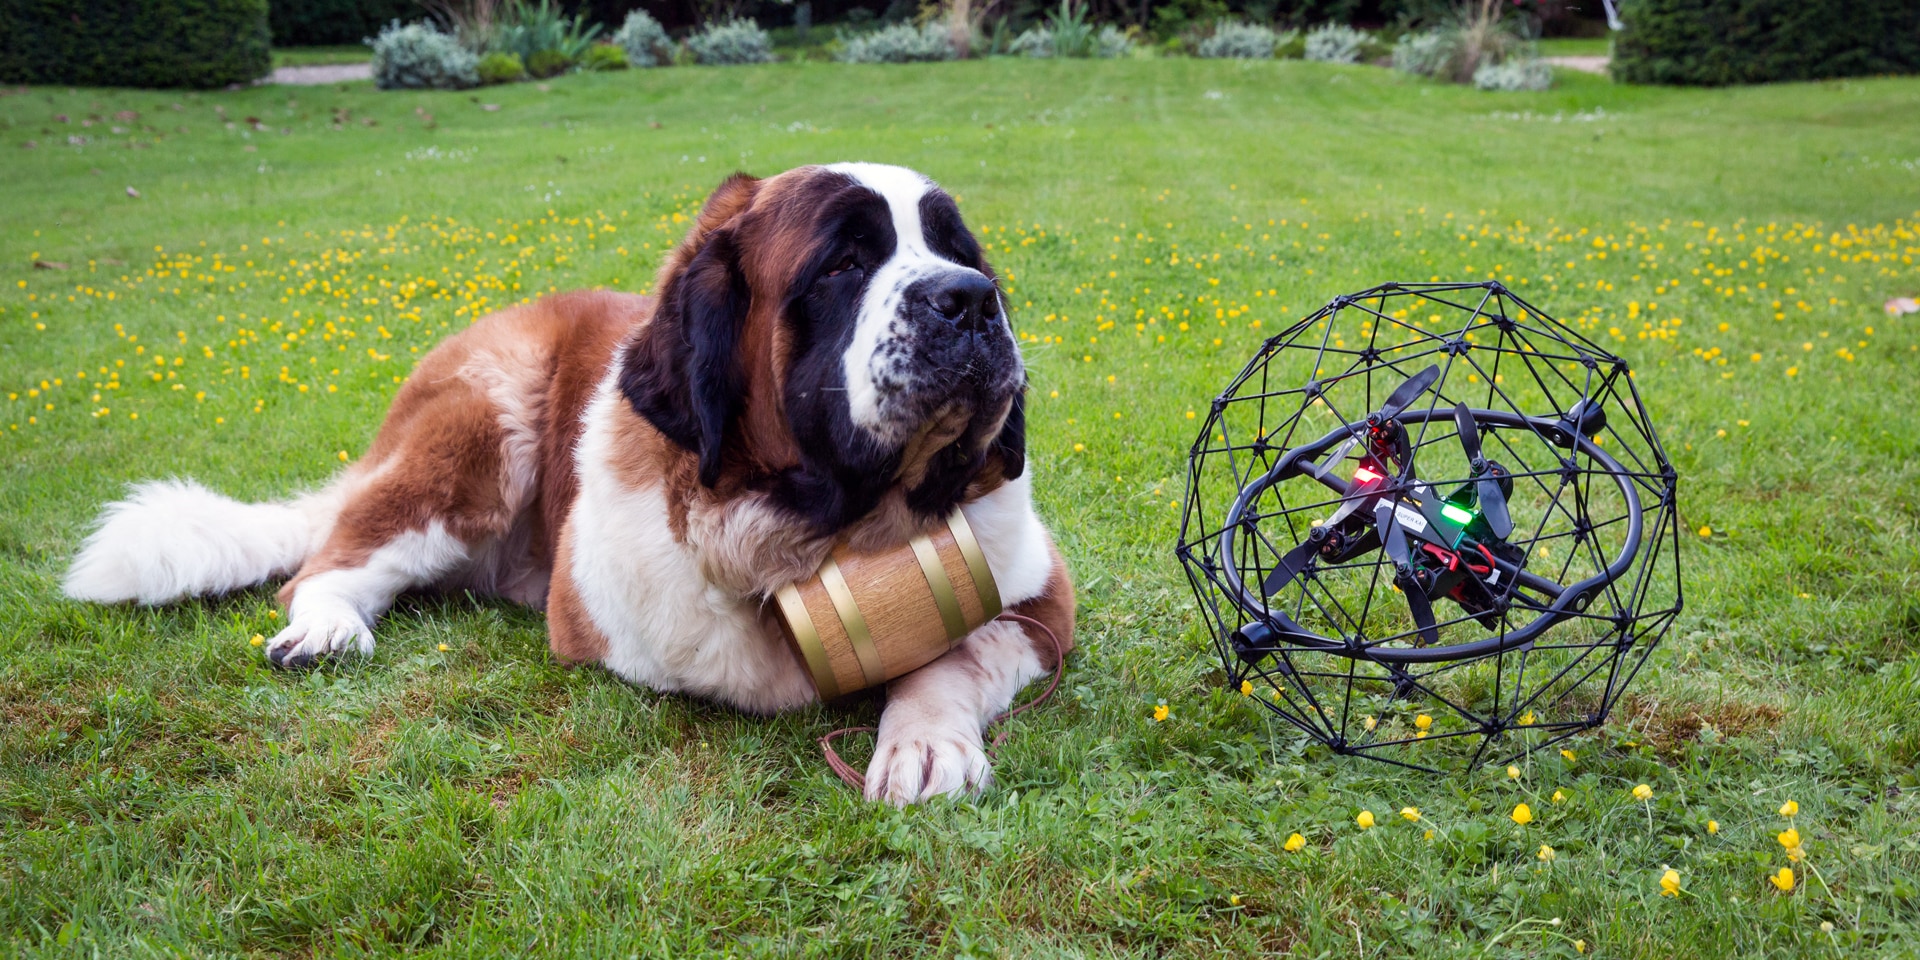  Un chien Saint-Bernard est couché sur une pelouse à côté d’un drone.